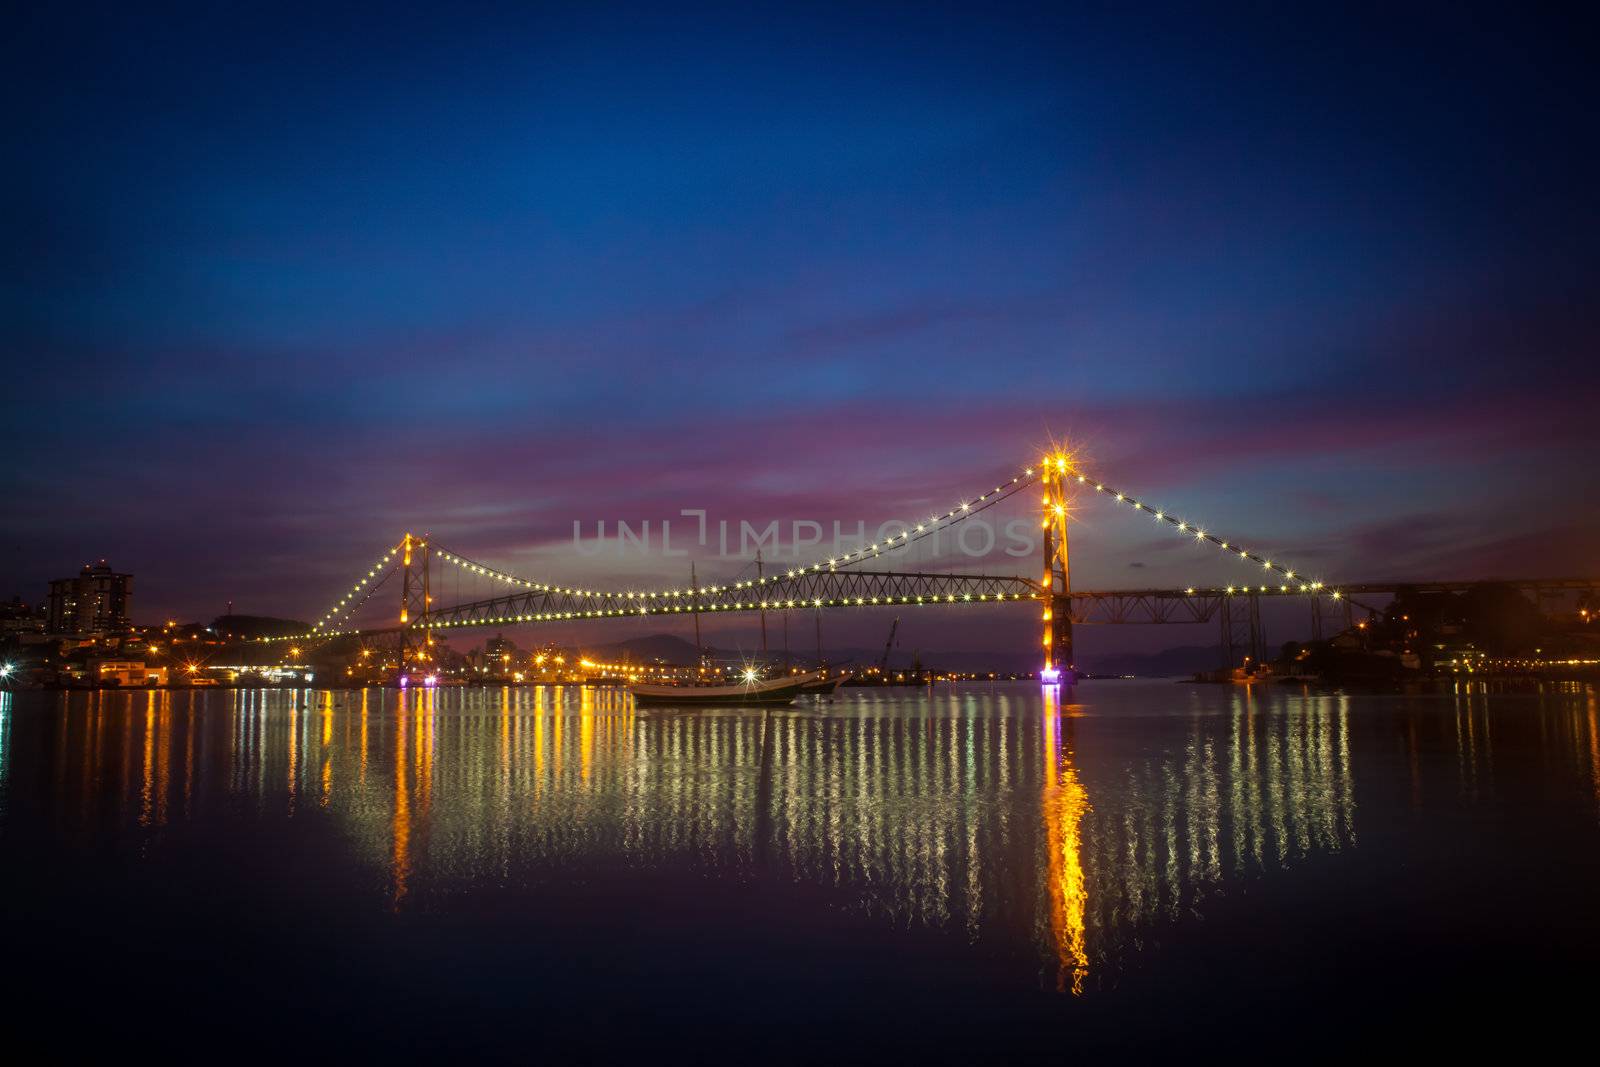 Bridge at Night by Daniel_Wiedemann